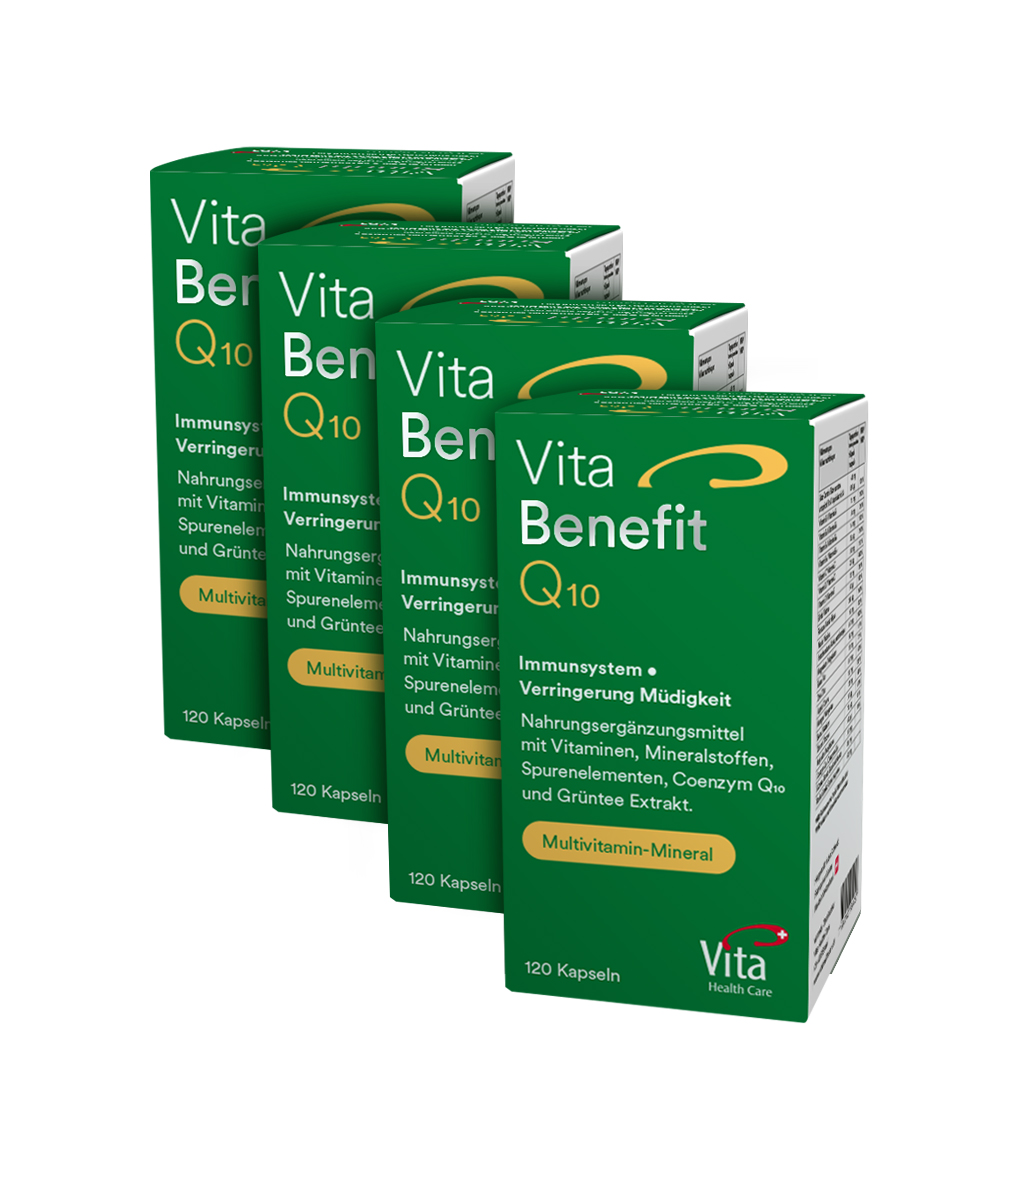  Vita Benefit Q10, Four pack